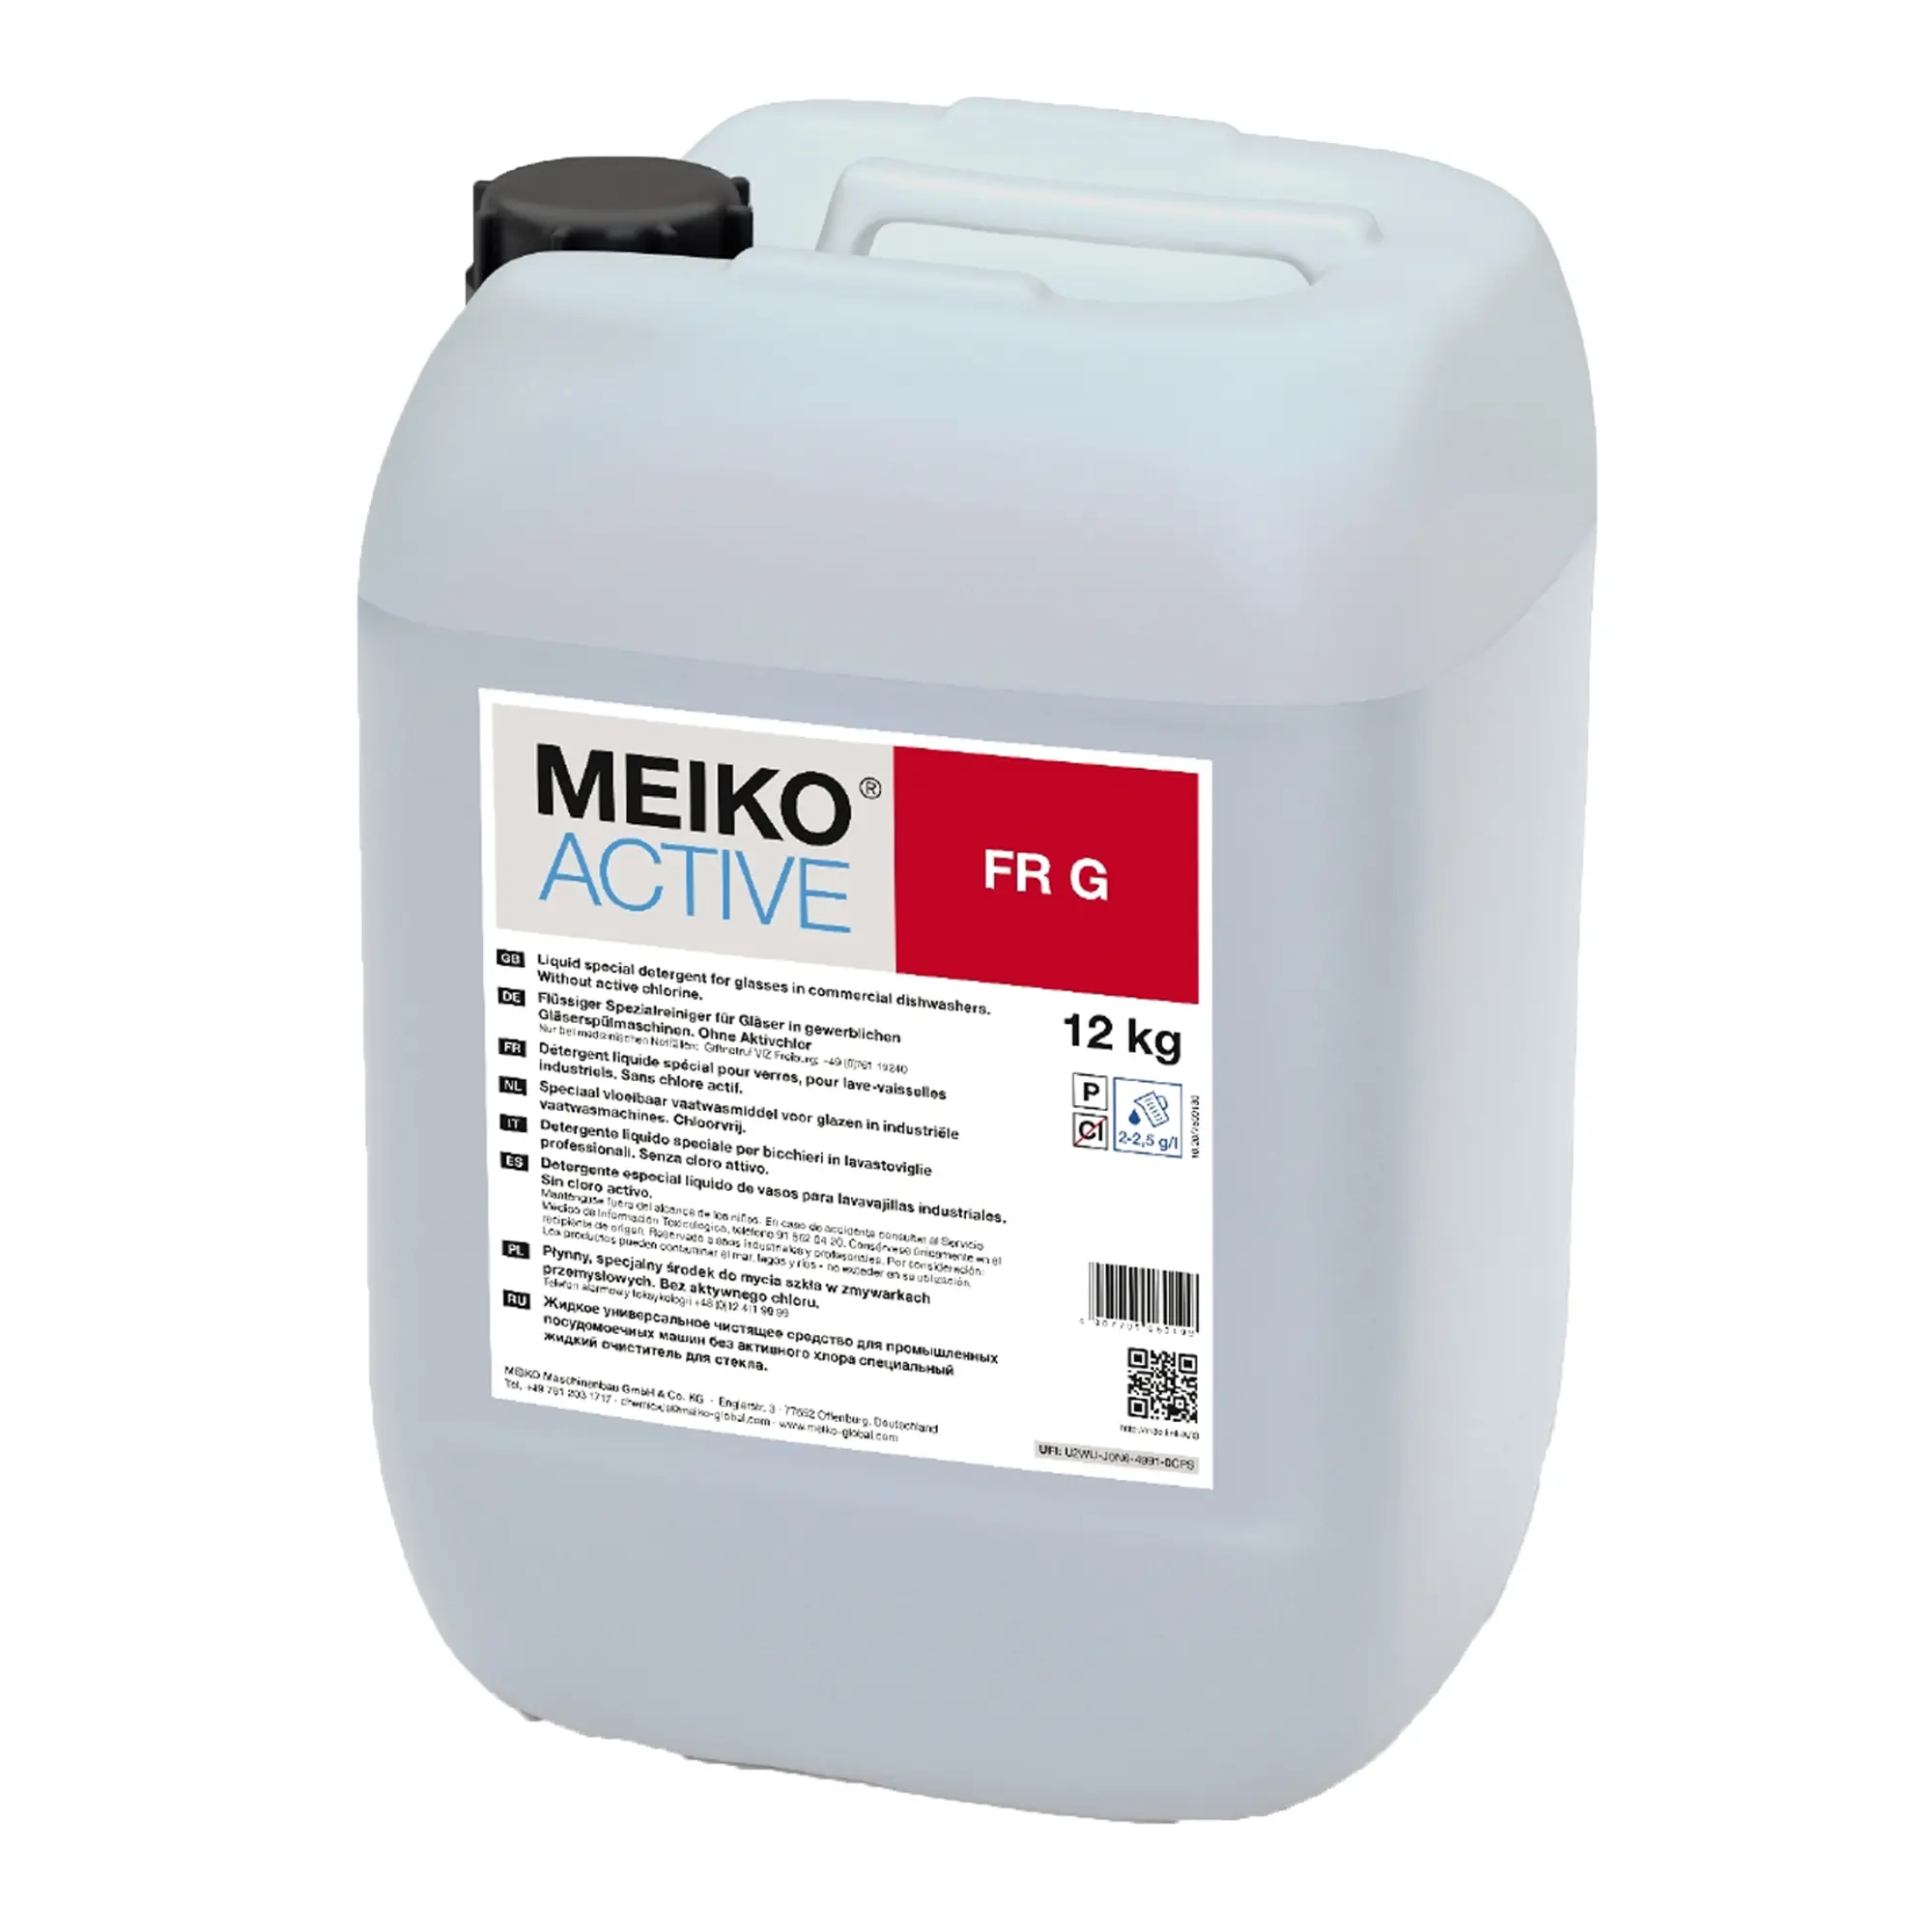 Meiko Active FR G flüssiger Spezialreiniger für Gläser